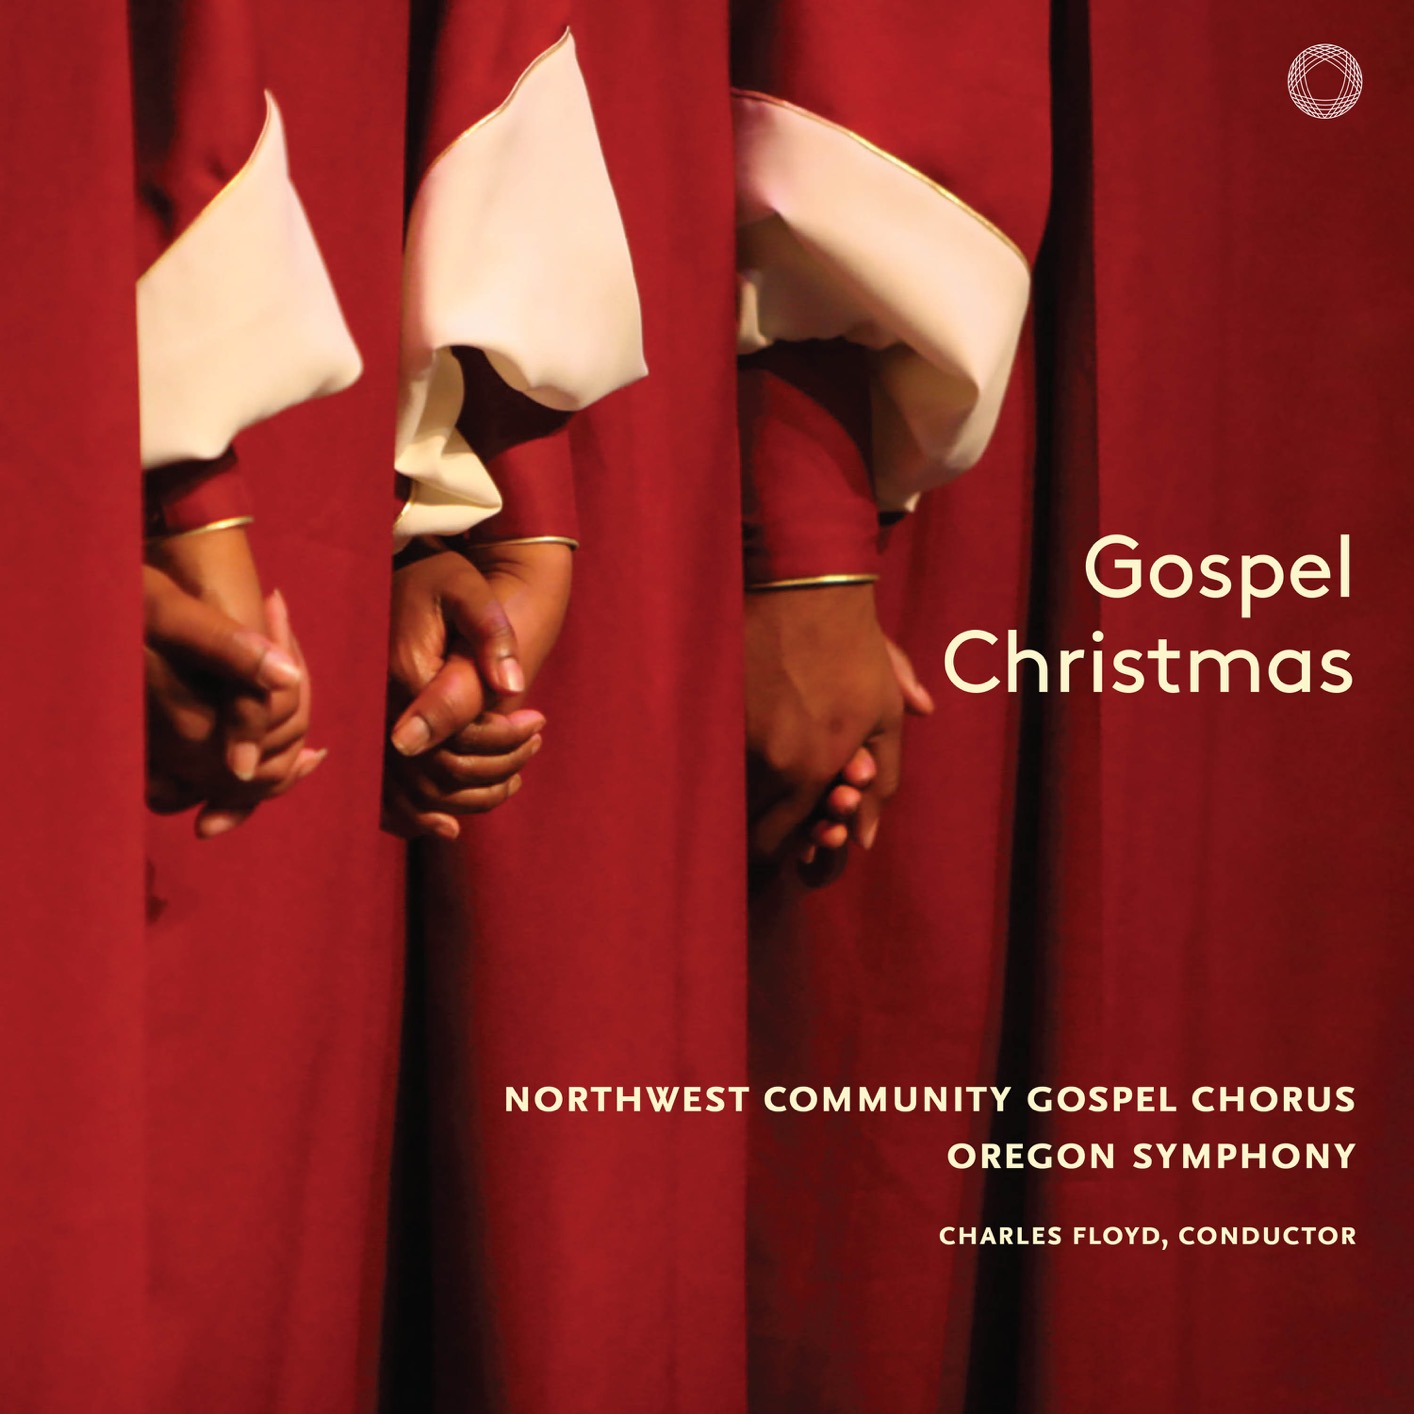 Northwest Community Gospel Chorus – Gospel Christmas (Live) (2018) [FLAC 24bit/96kHz]